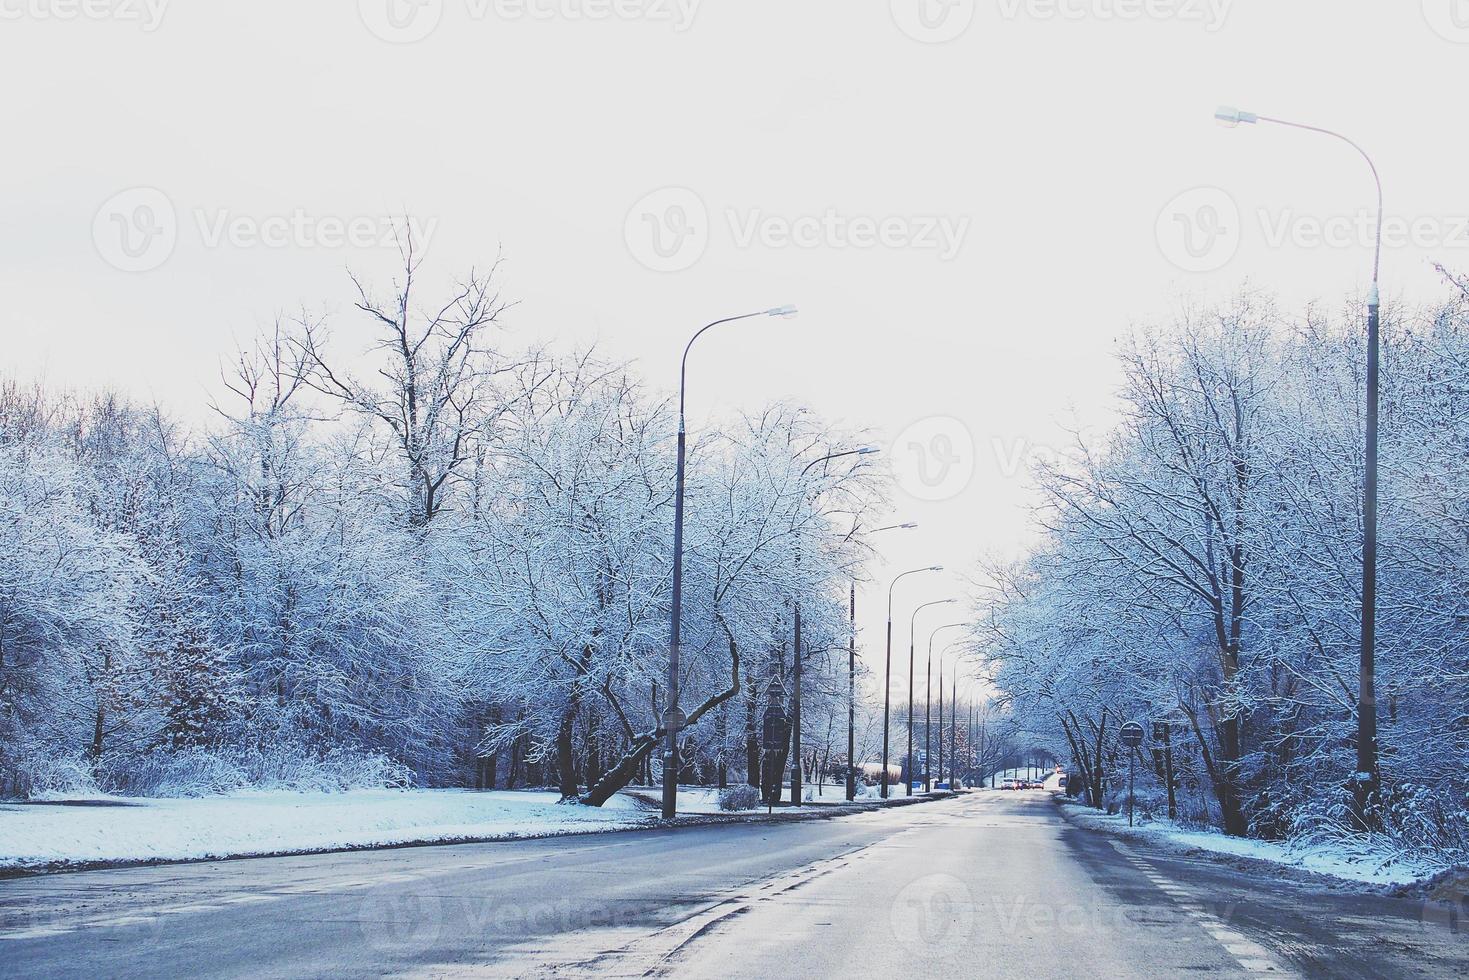 winter landschap met vers sneeuw en bomen foto